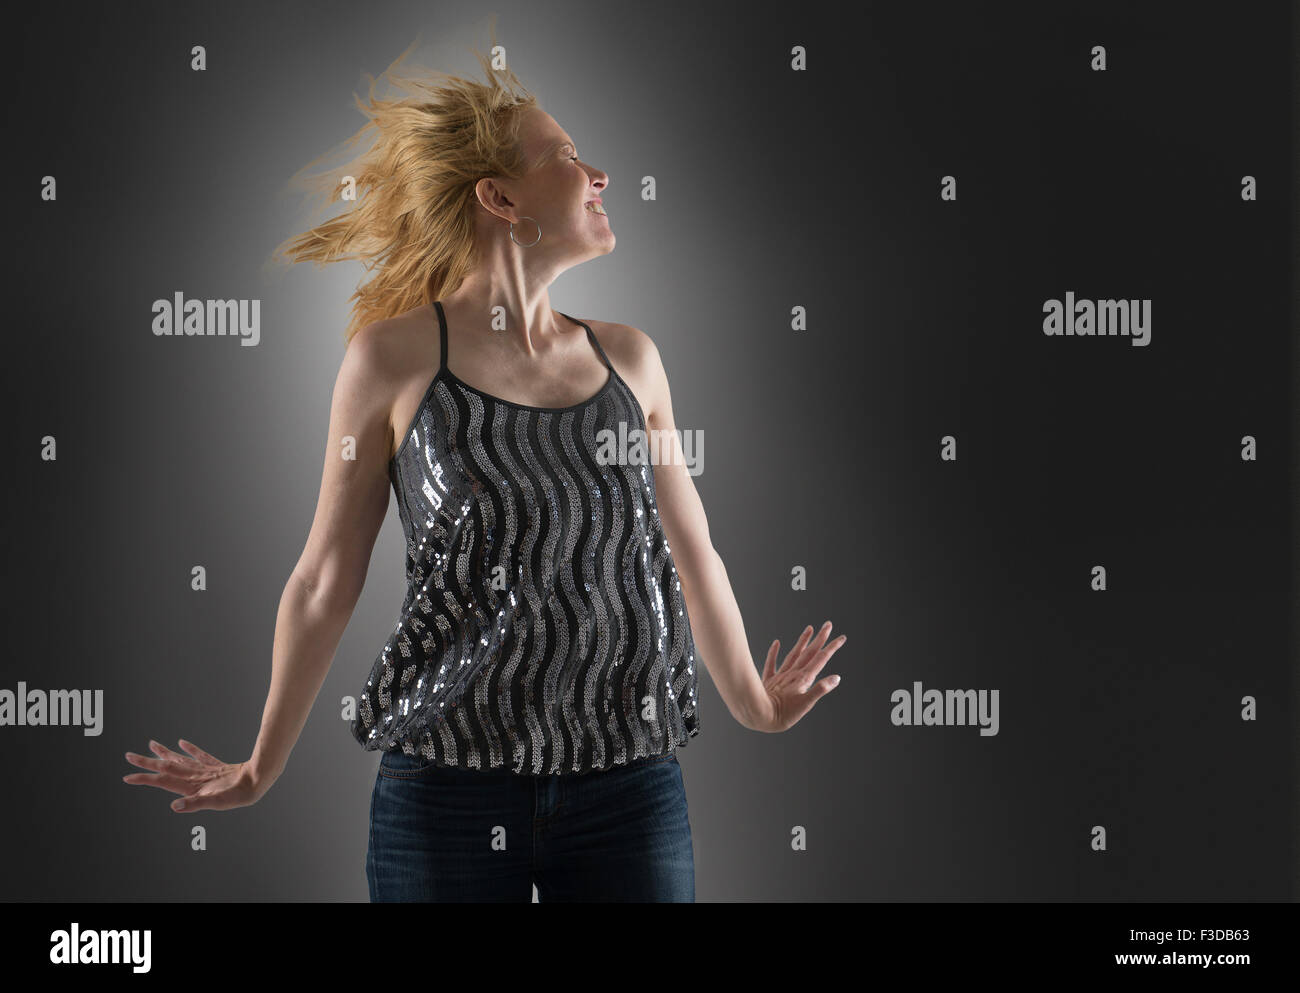 Happy woman dancing in studio Stock Photo